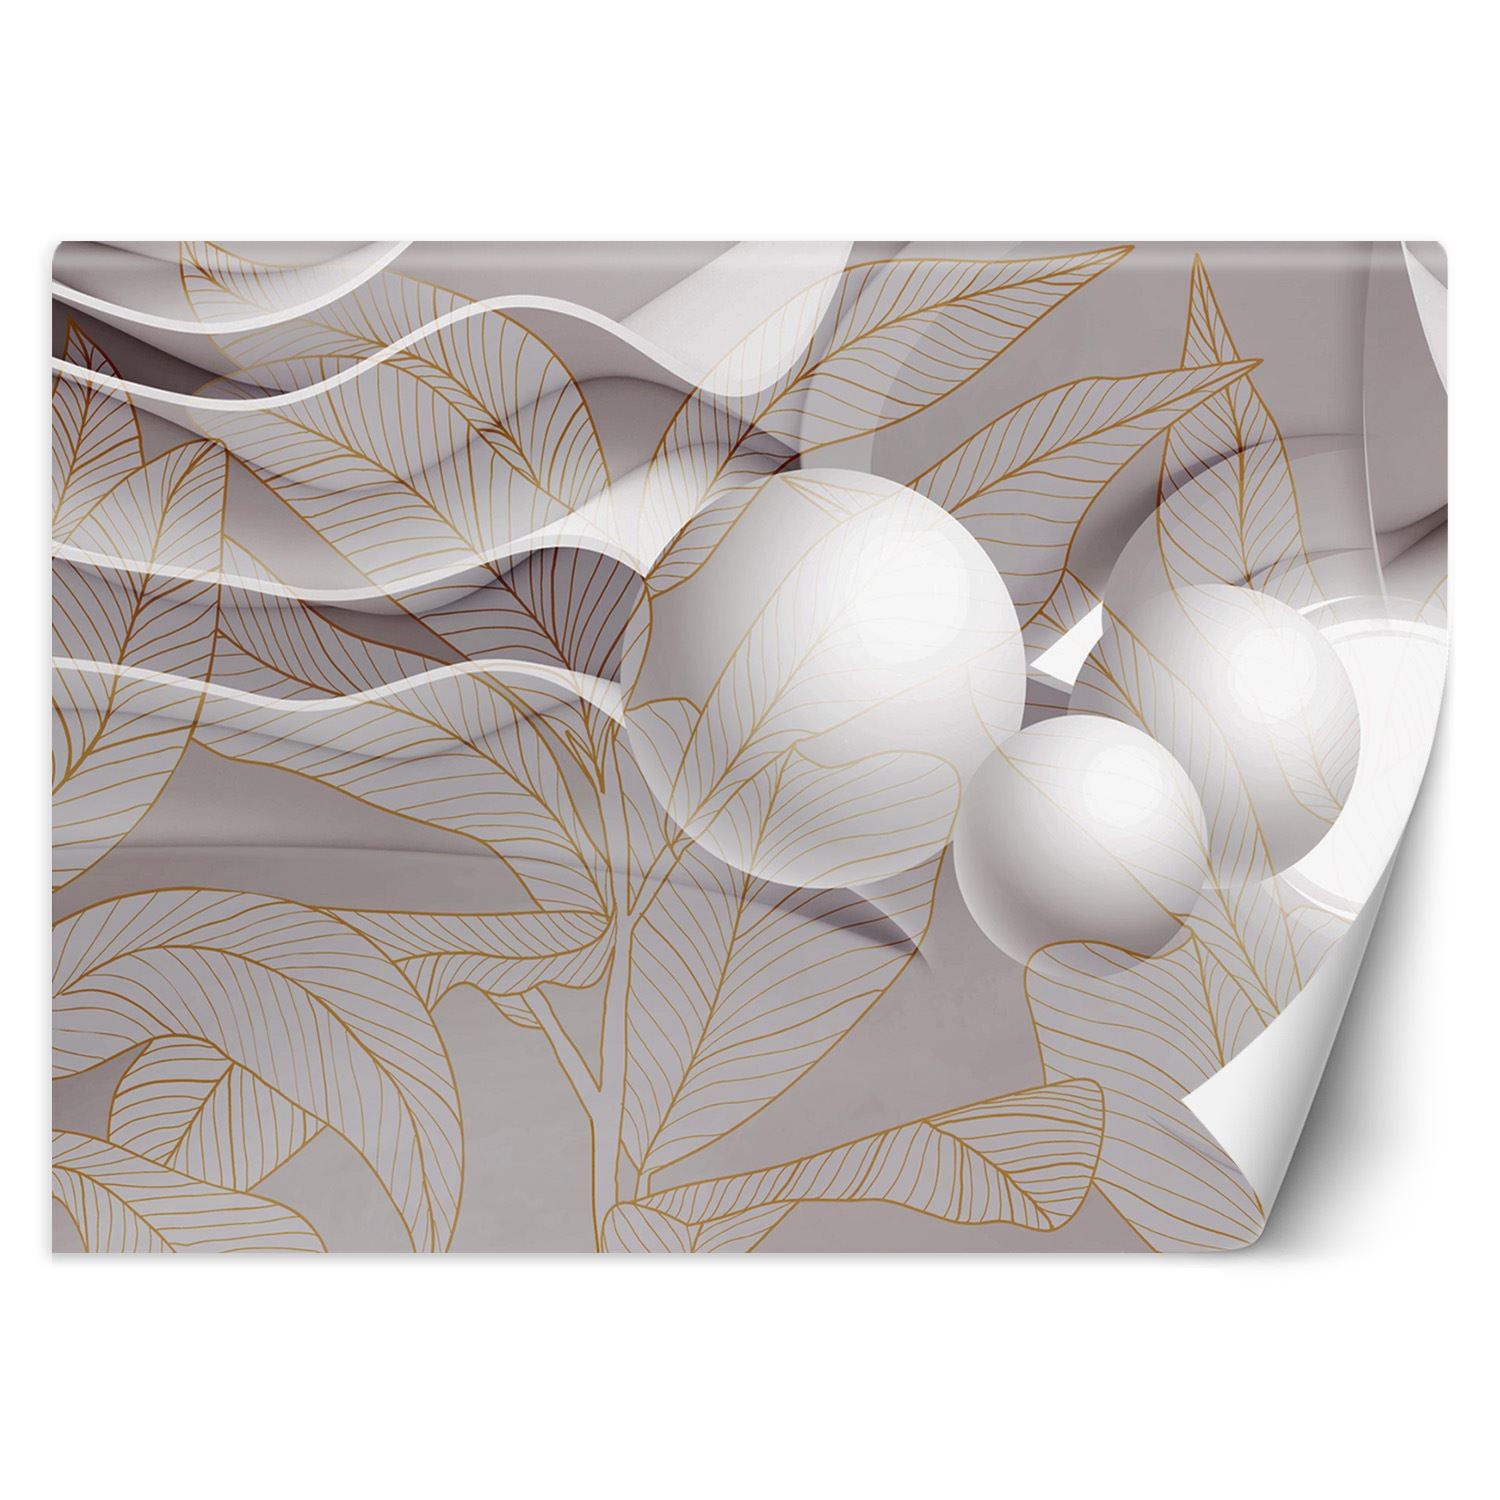 Trend24 – Behang – Goudbladeren En Ballen 3D – Vliesbehang – Fotobehang 3D – Behang Woonkamer – 450×315 cm – Incl. behanglijm